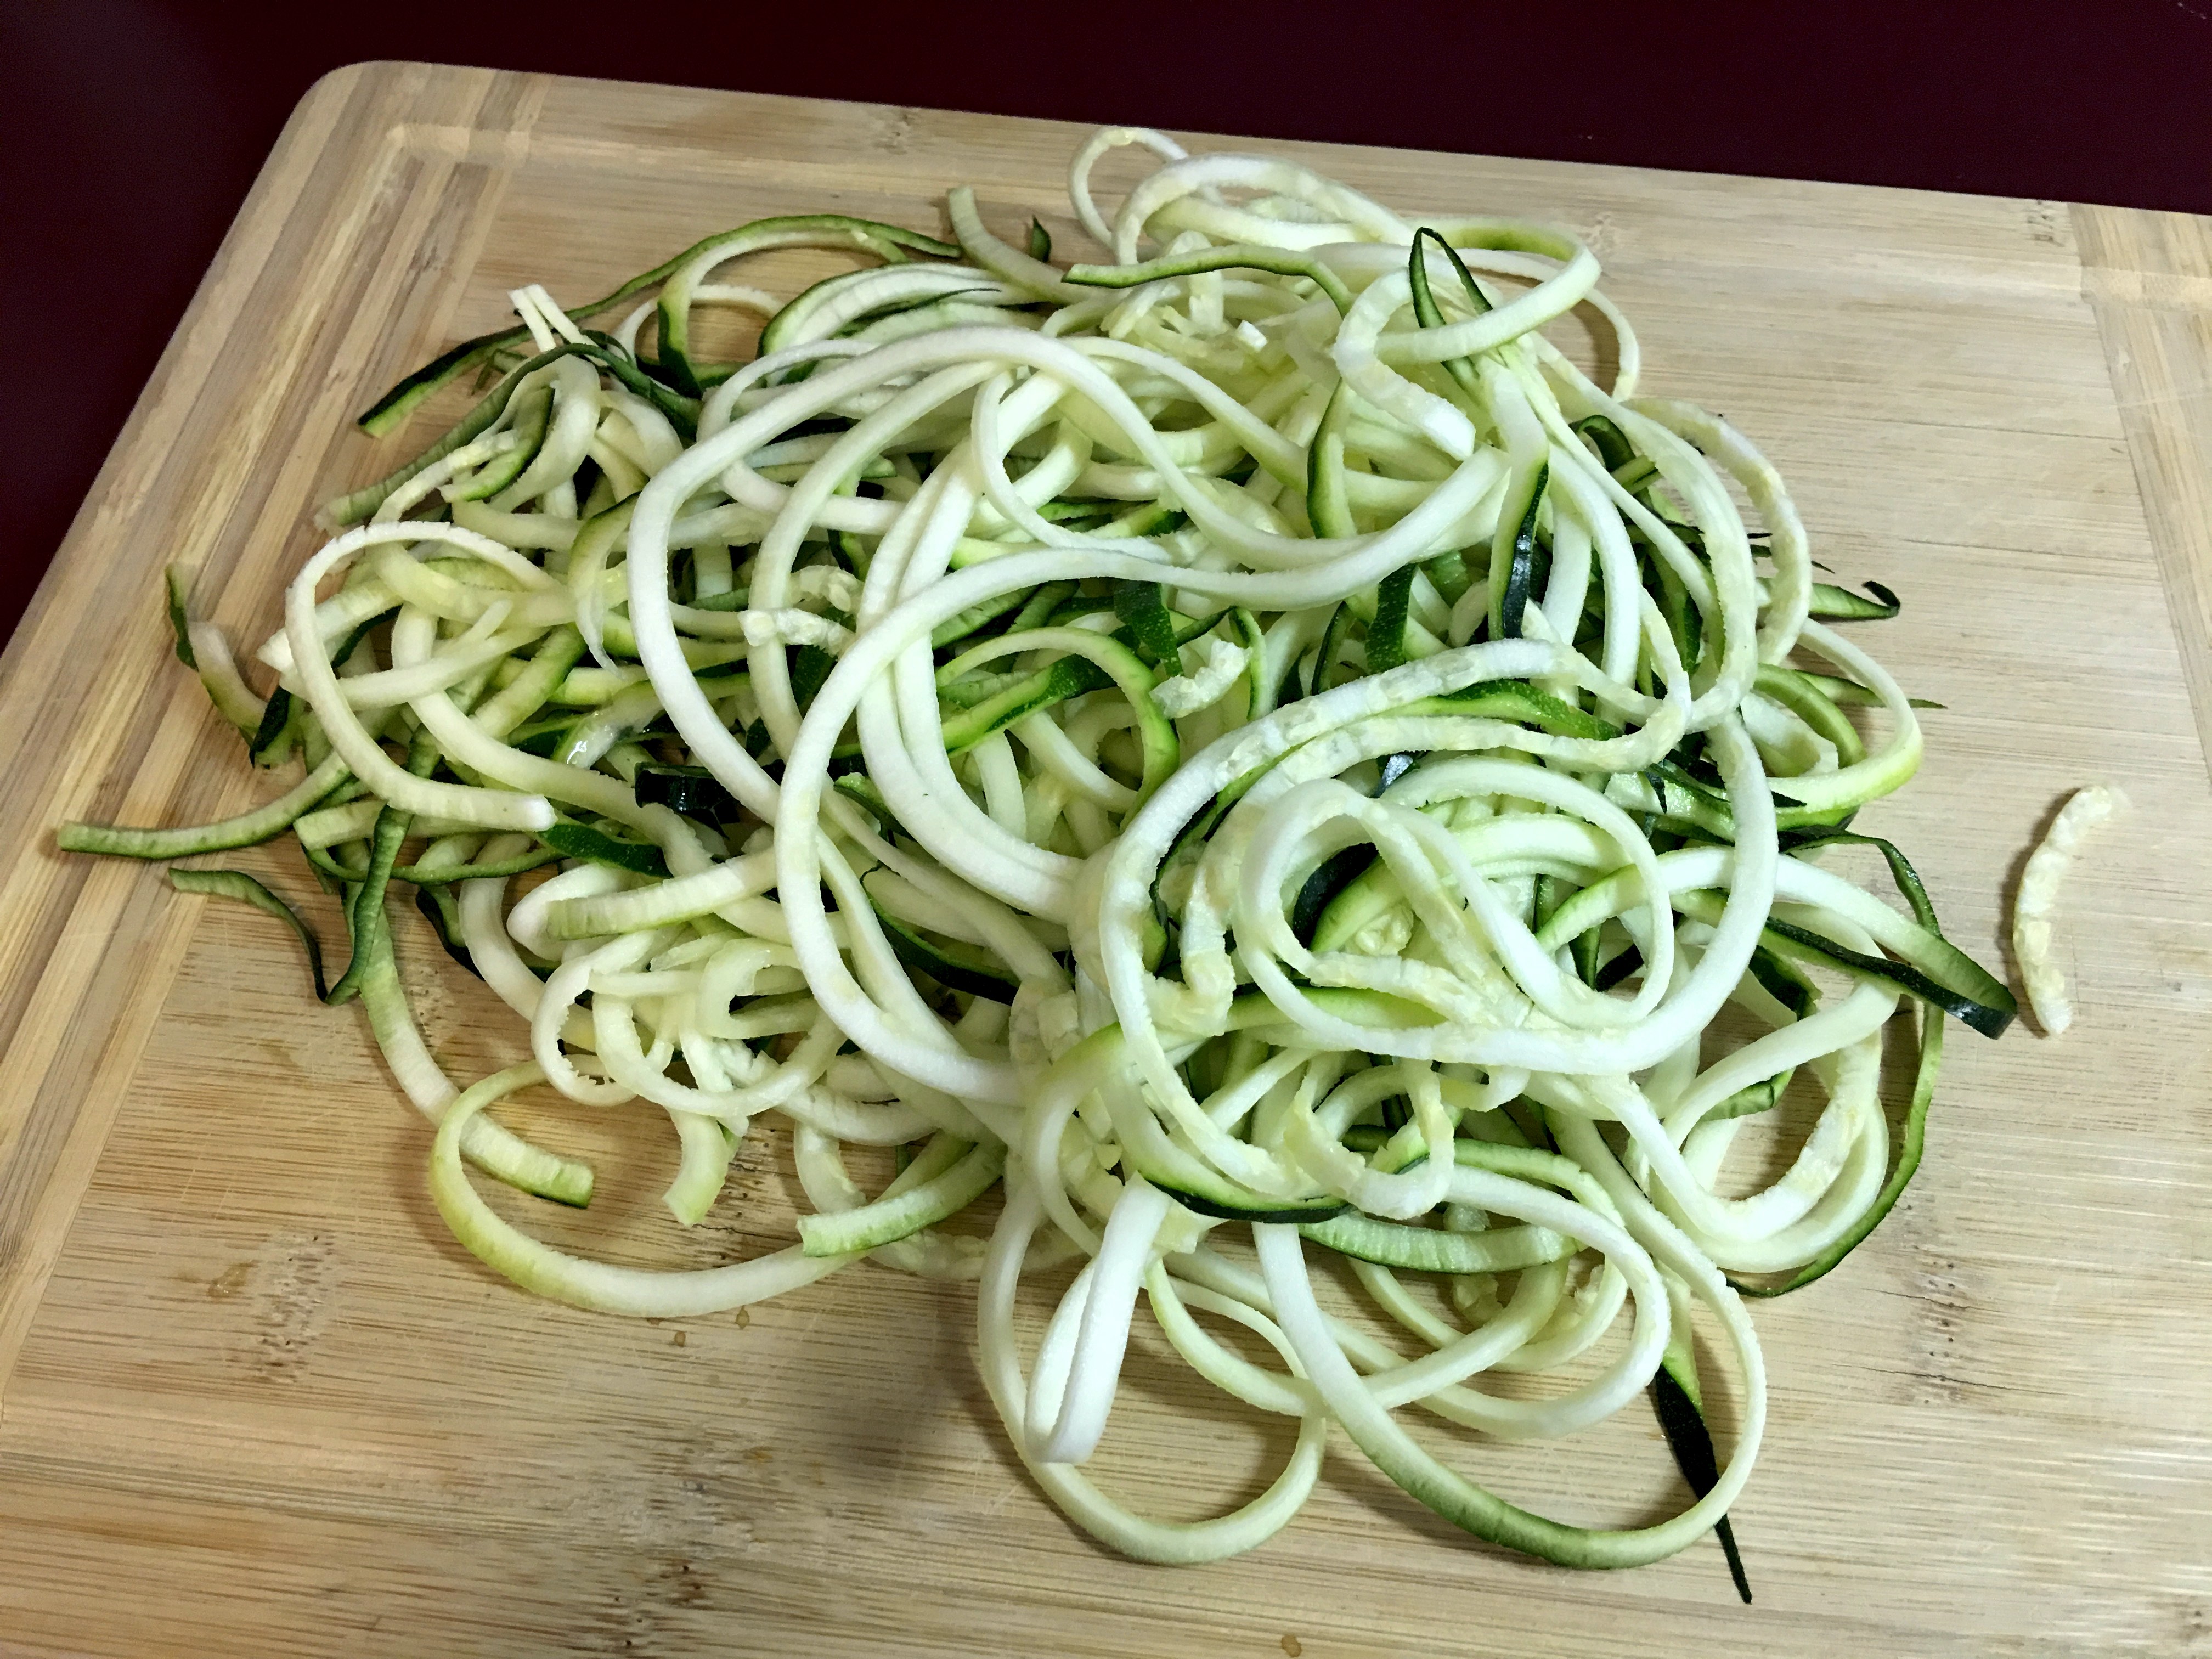 raw zucchini noodles - zucchini noodle recipe - zoodle recipe - low carb noodle recipe - low carb spaghetti recipe